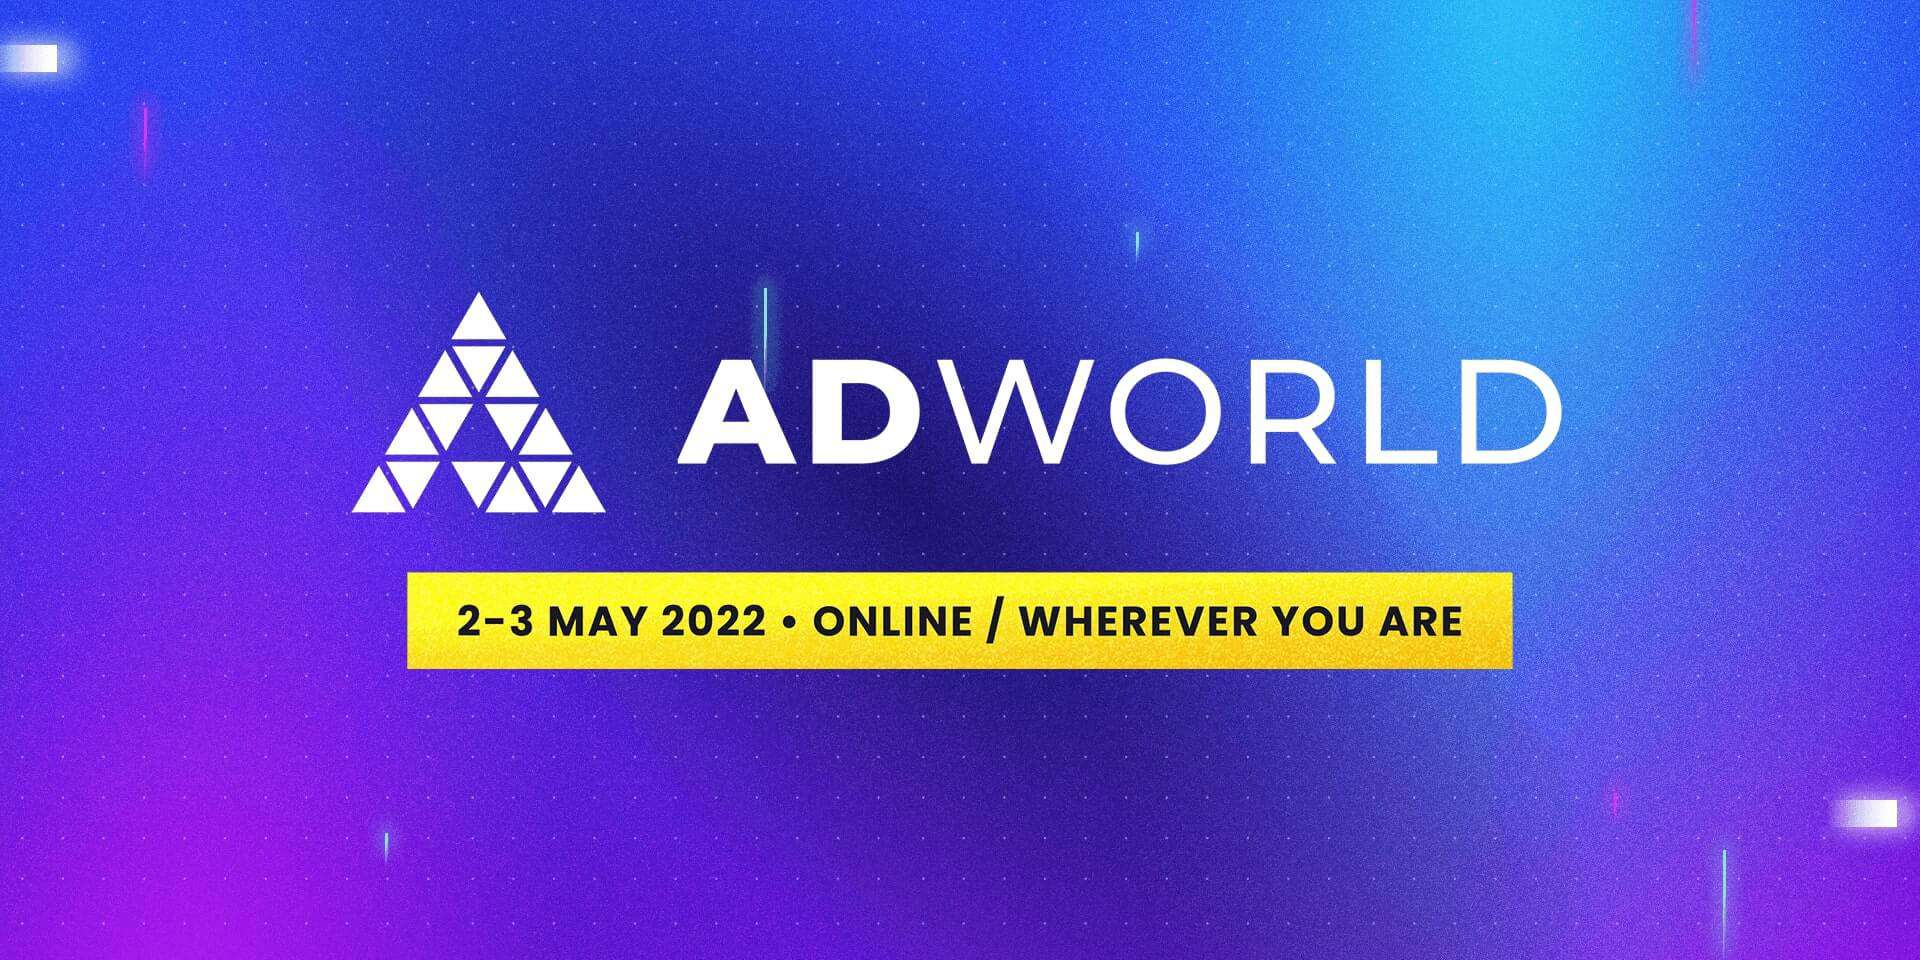 Ad world 2022 